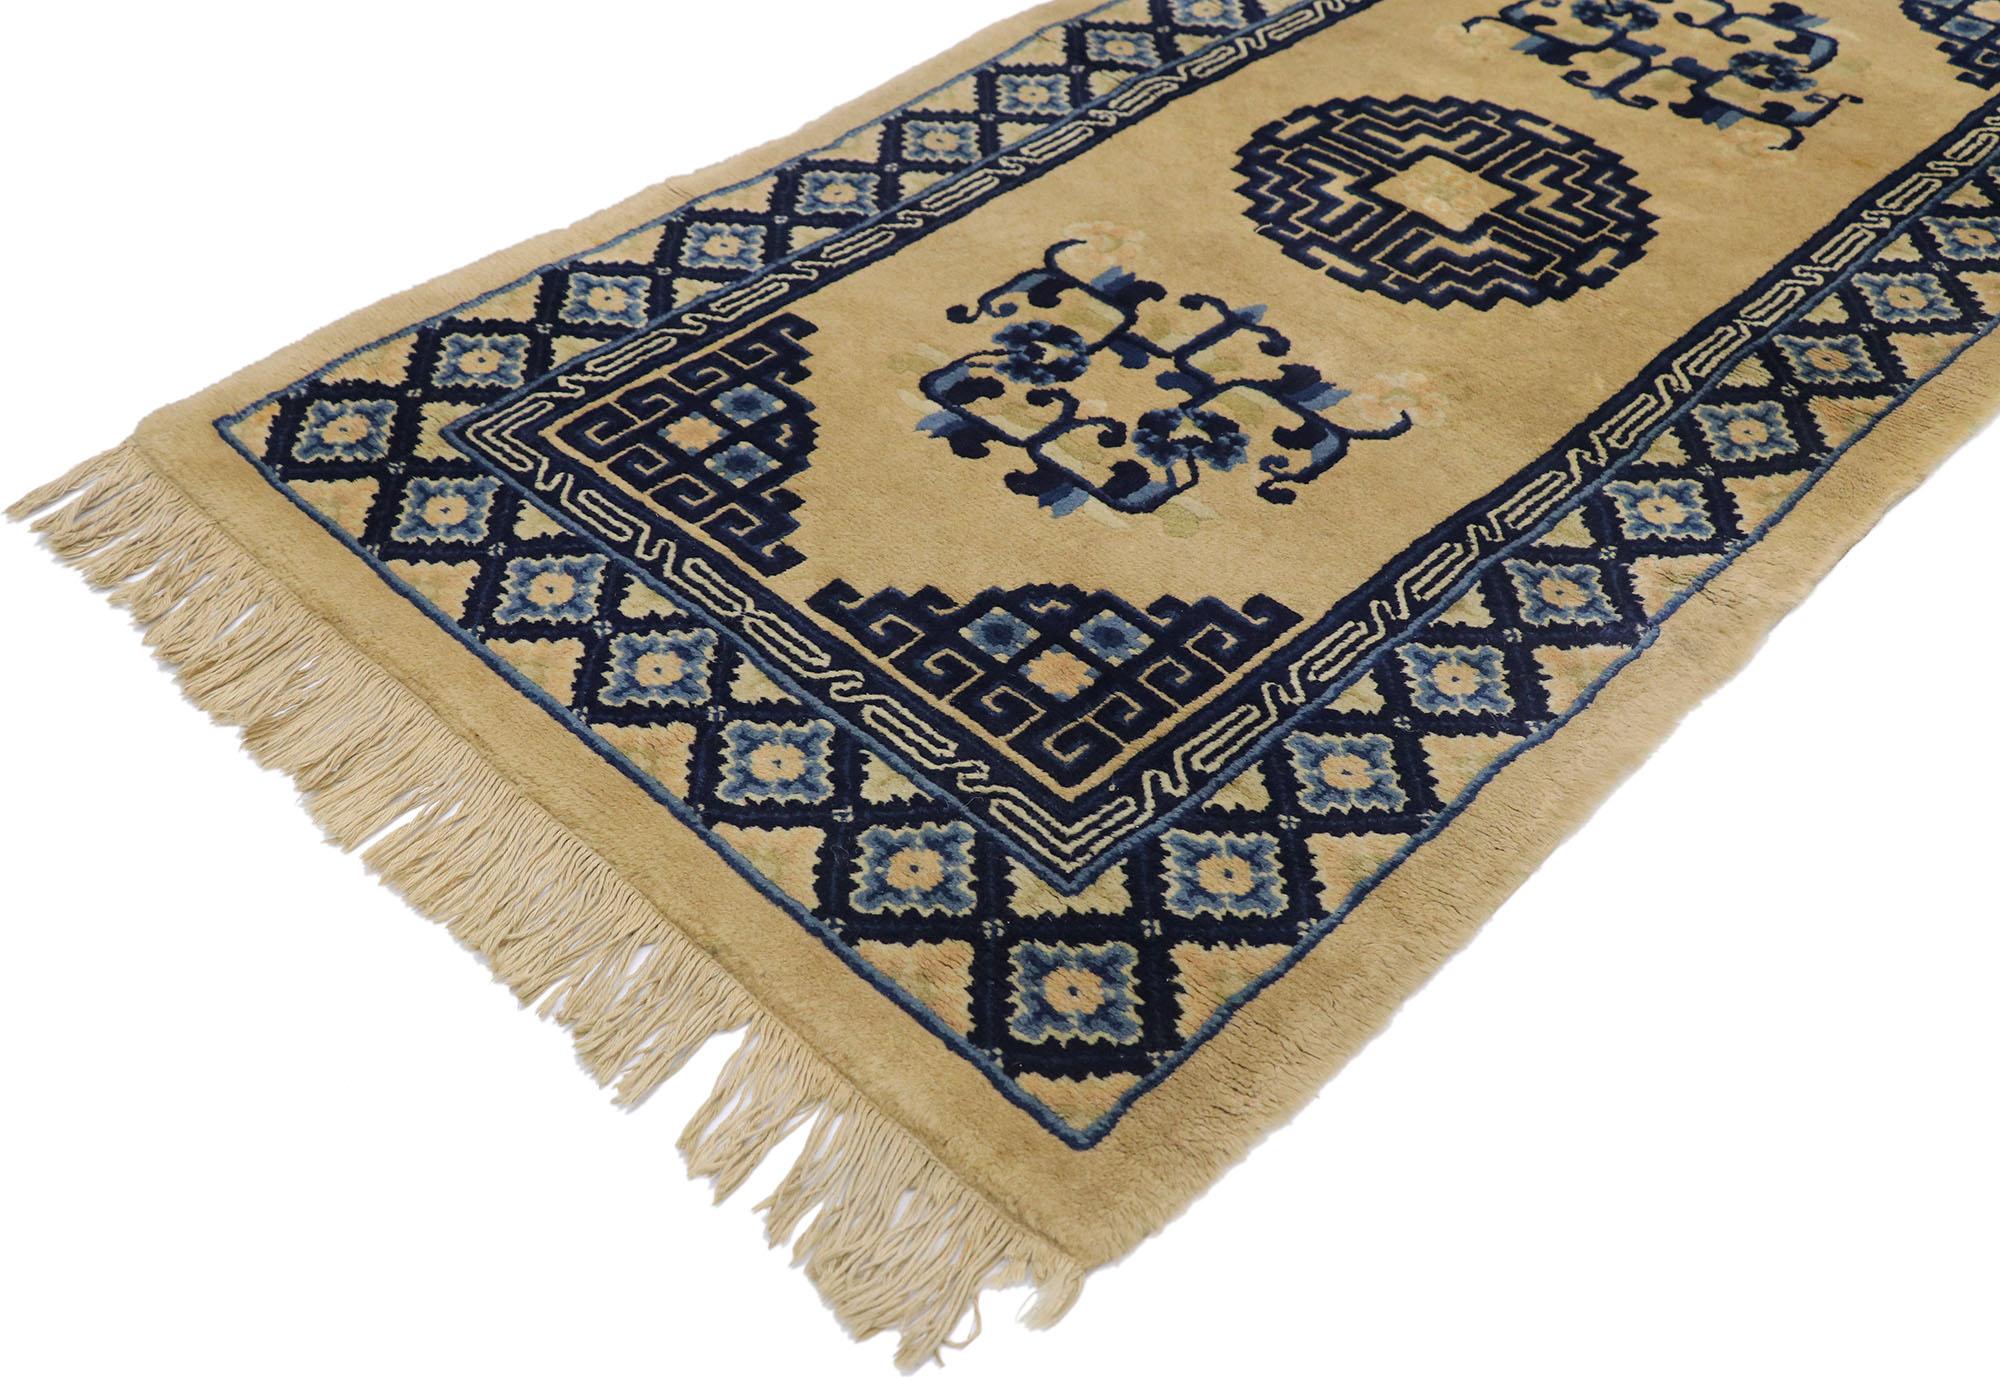 77588 ancien tapis chinois Baotou de style Art Déco. Ce tapis Baotou chinois ancien en laine noué à la main présente un médaillon ajouré arrondi entourant une rosette centrale flottant au centre d'un champ taupe abrasé. Des motifs ajourés